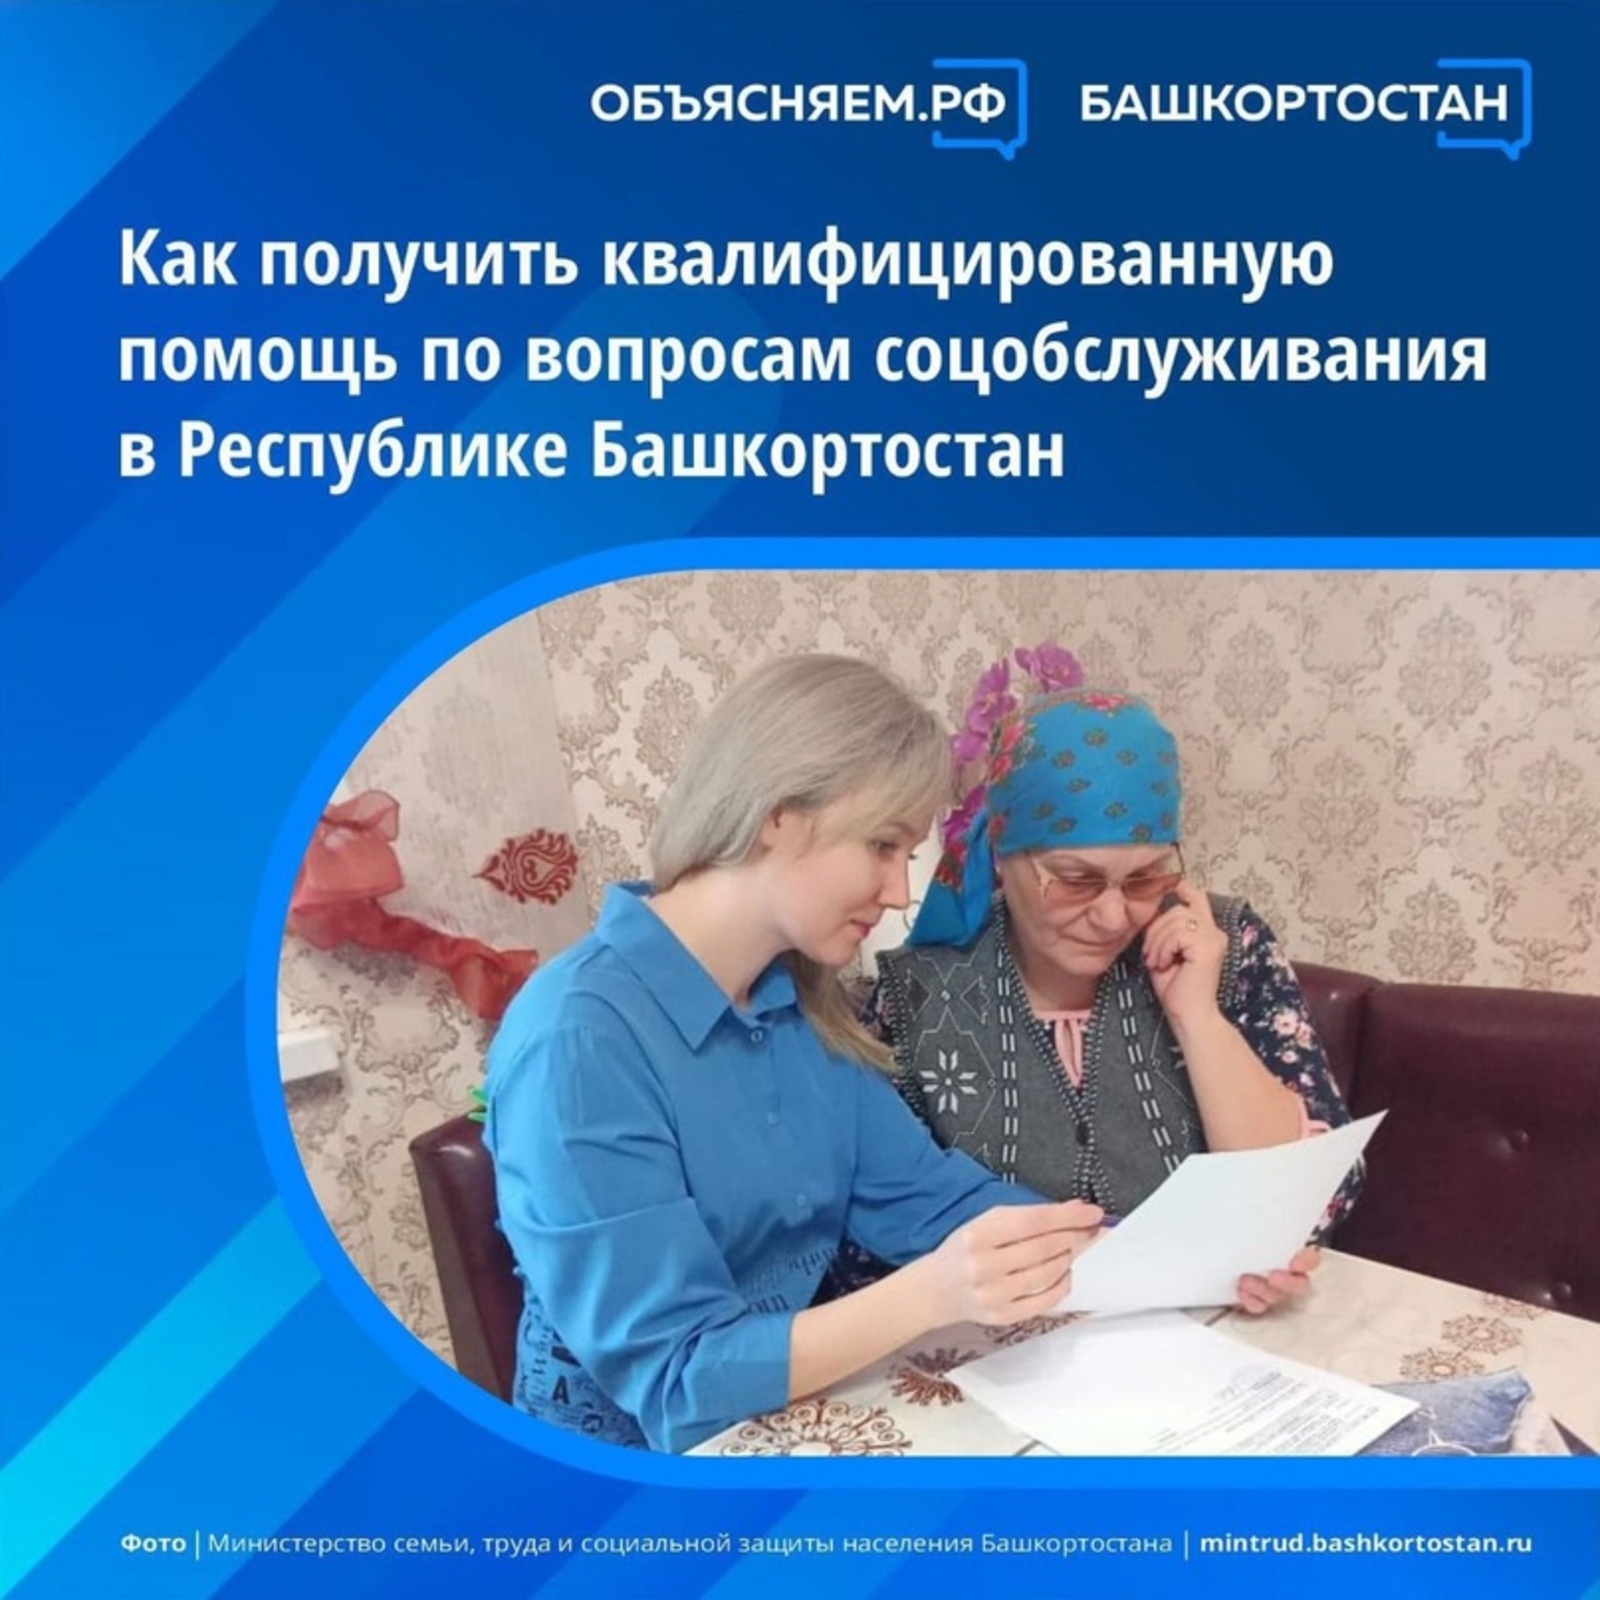 Горячая линия для квалифицированной помощи по вопросам соцобслуживания в Башкортостане